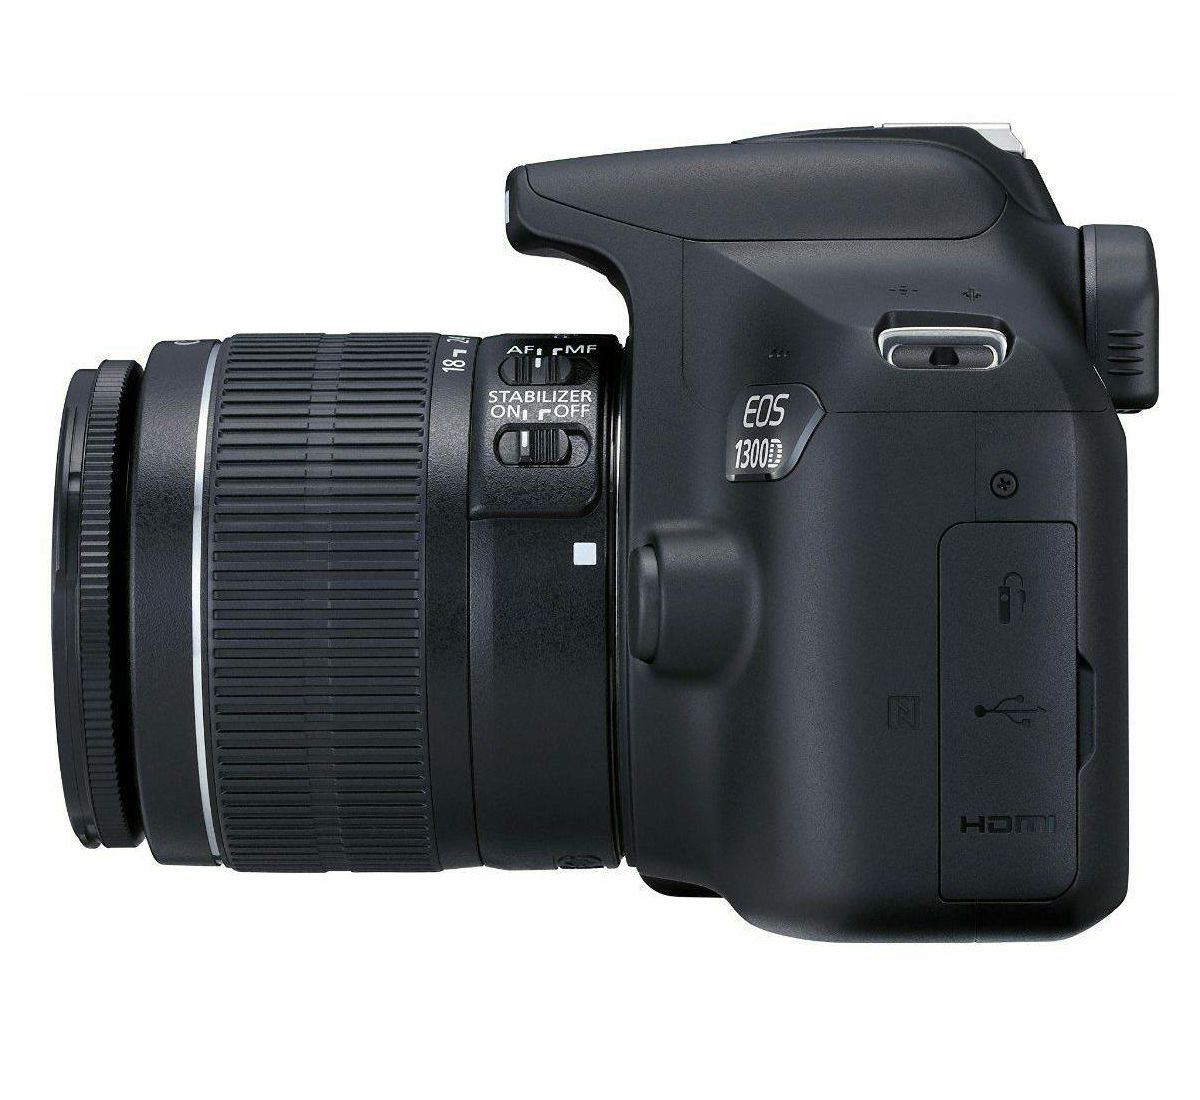 Canon EOS 1300D + 18-55 IS + 100EG + 8GB KIT DSLR digitalni fotoaparat, objektiv EF-S 18-55mm F3.5-5.6 IS, torba i memorijska kartica (1160C064AA)